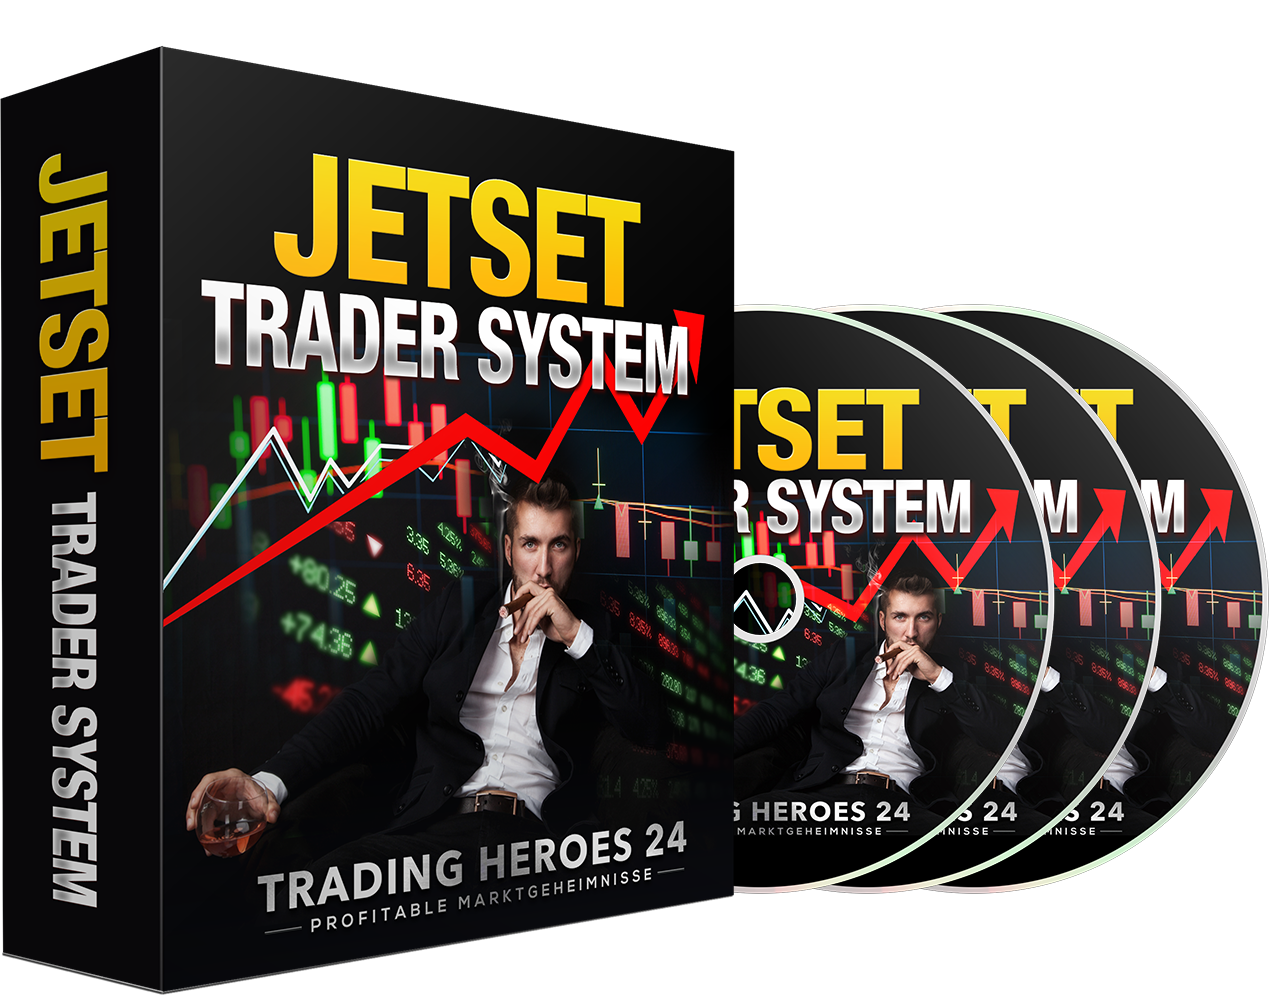 Jetset Tradersystem - Online Geld verdienen